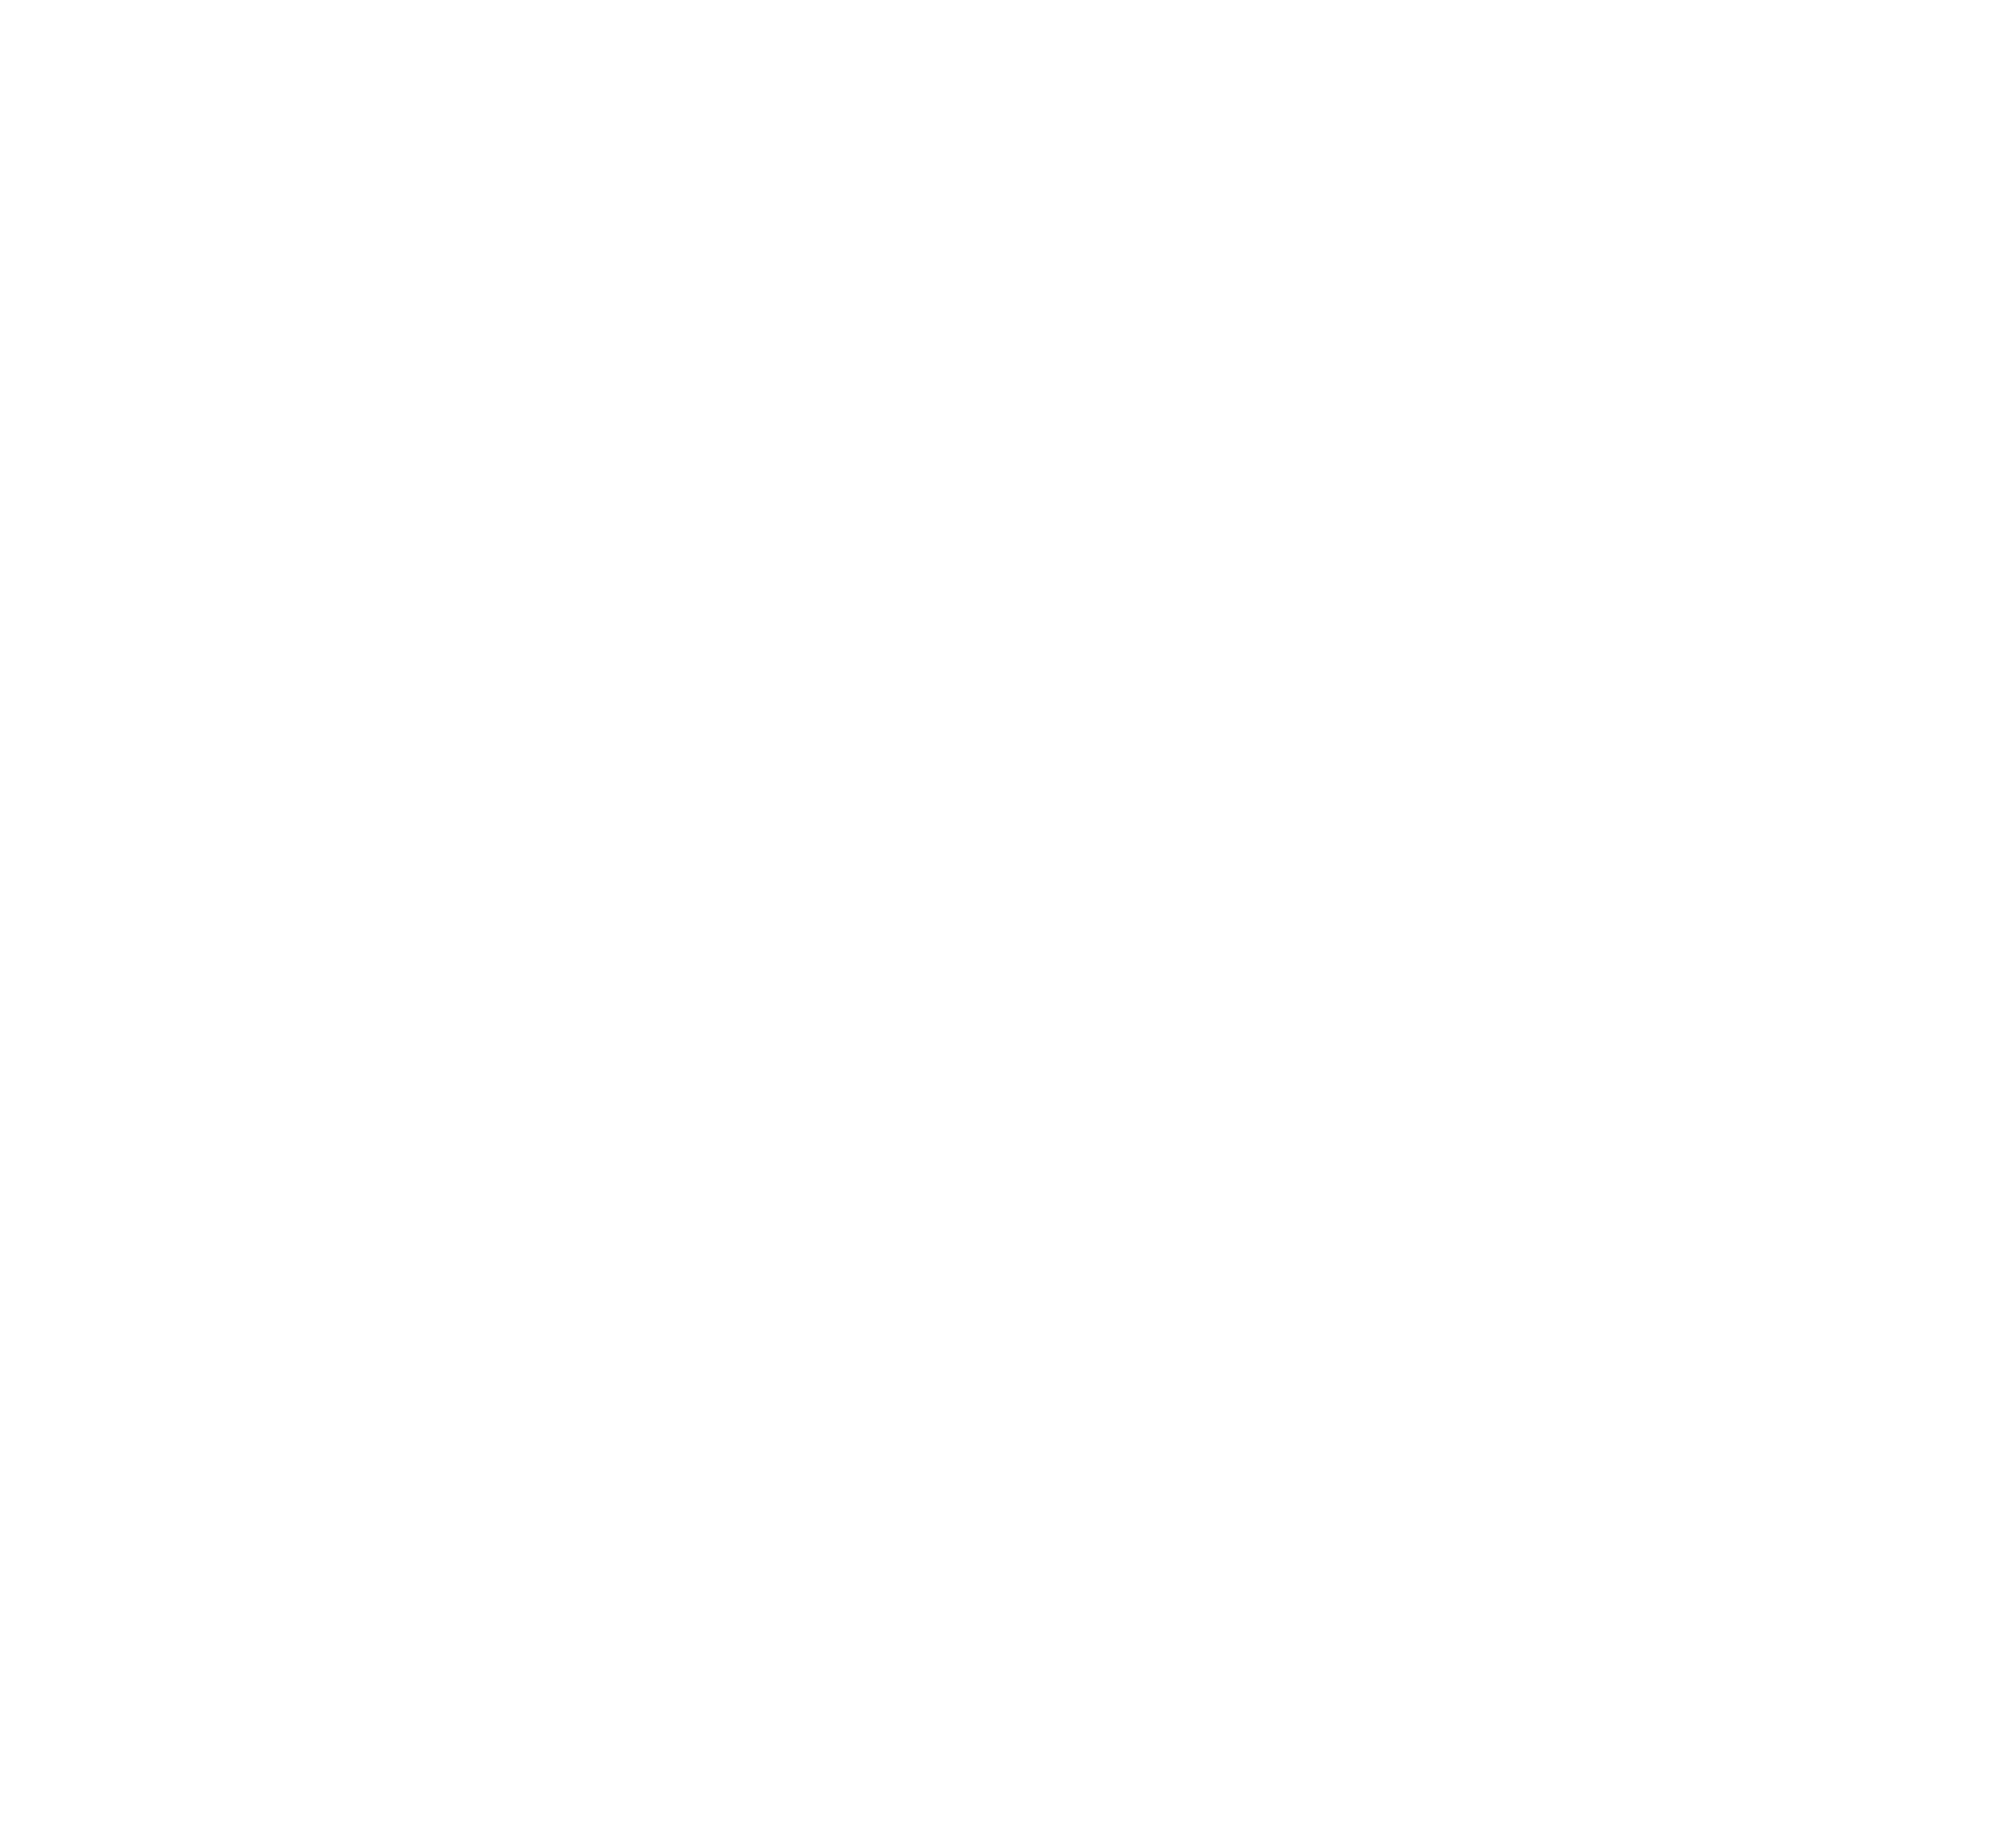 Scouting fleur-de-lis logo